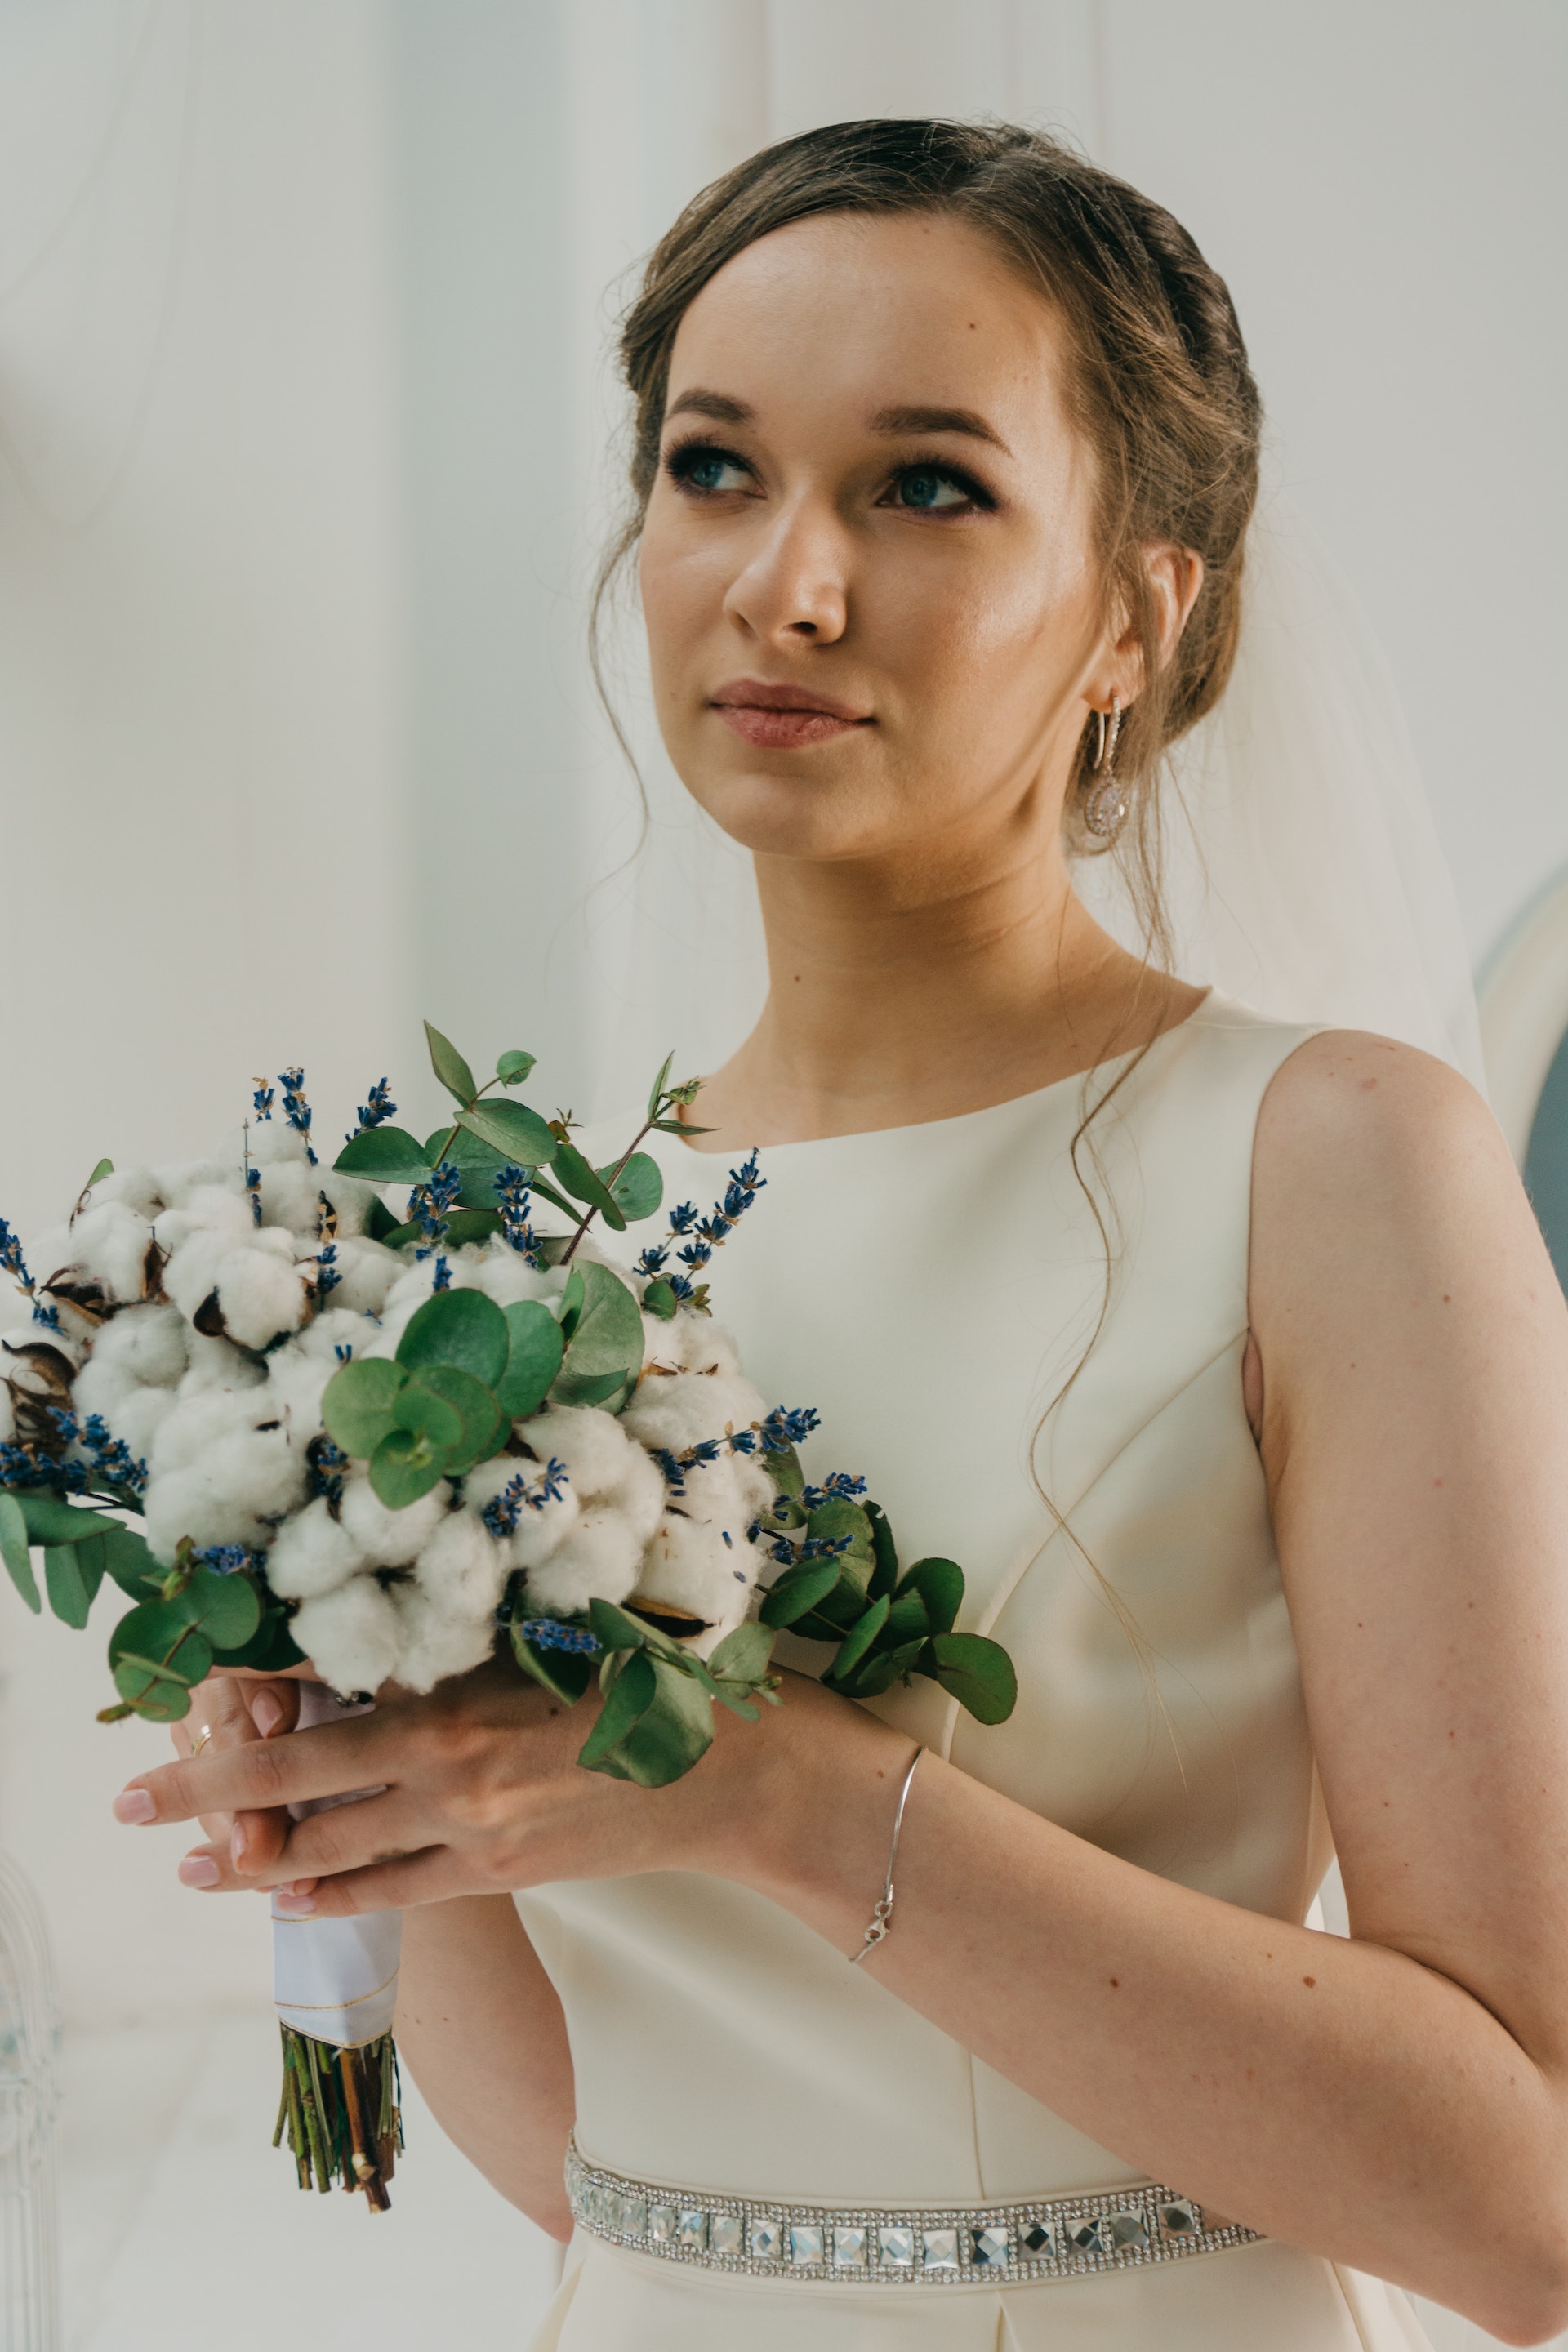 Une femme en robe blanche tenant un bouquet de fleurs | Source : Pexels